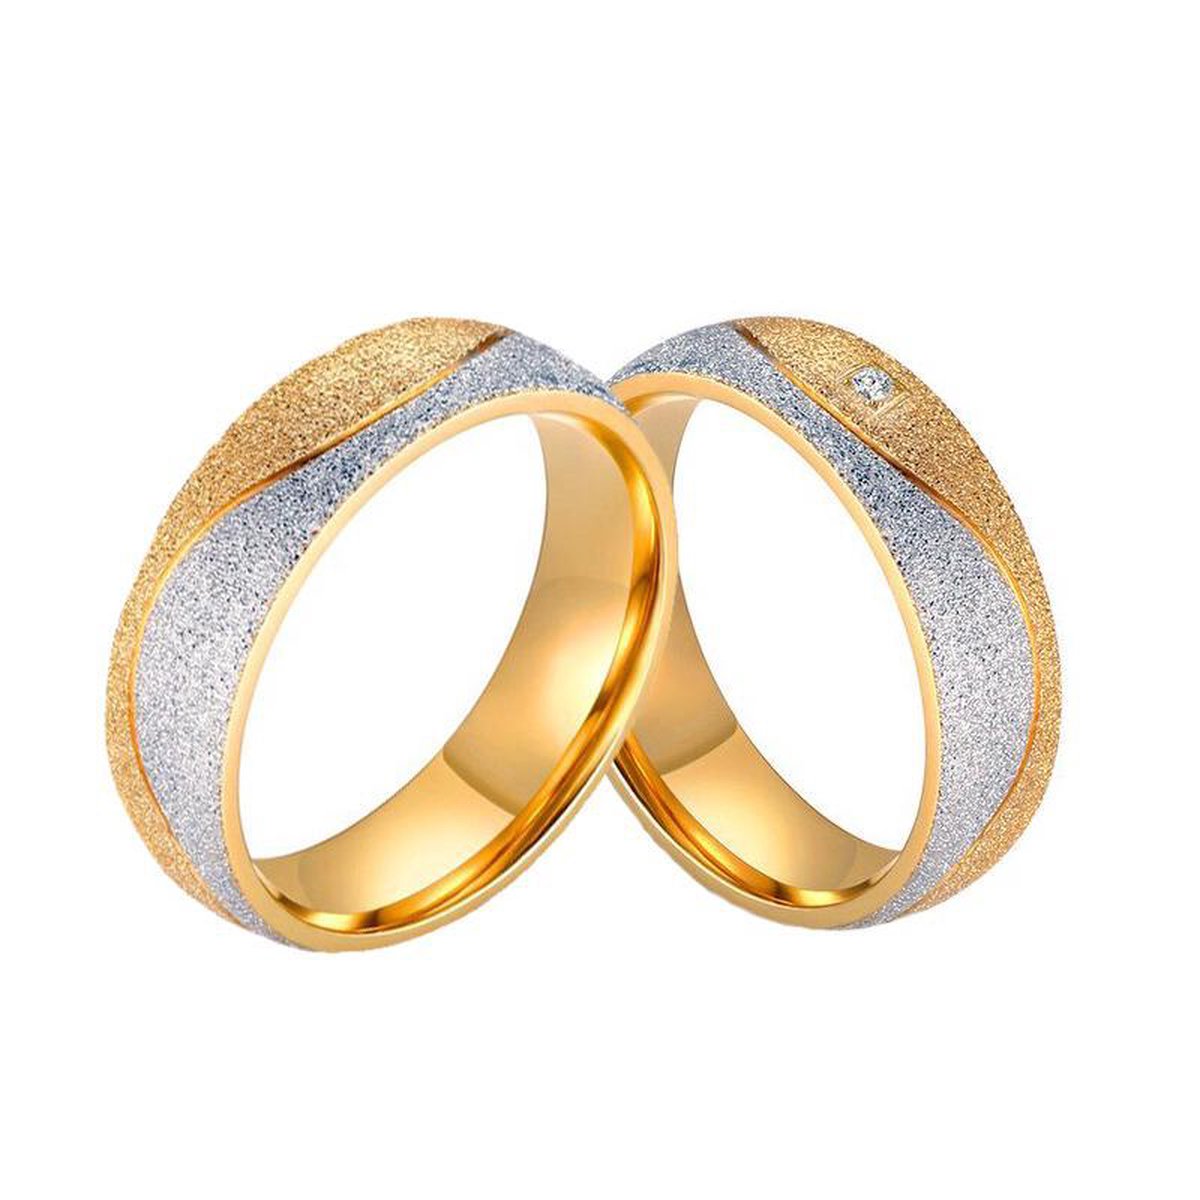 Zoëies ring voor haar goud- en zilverkleurig met glitters 17 mm